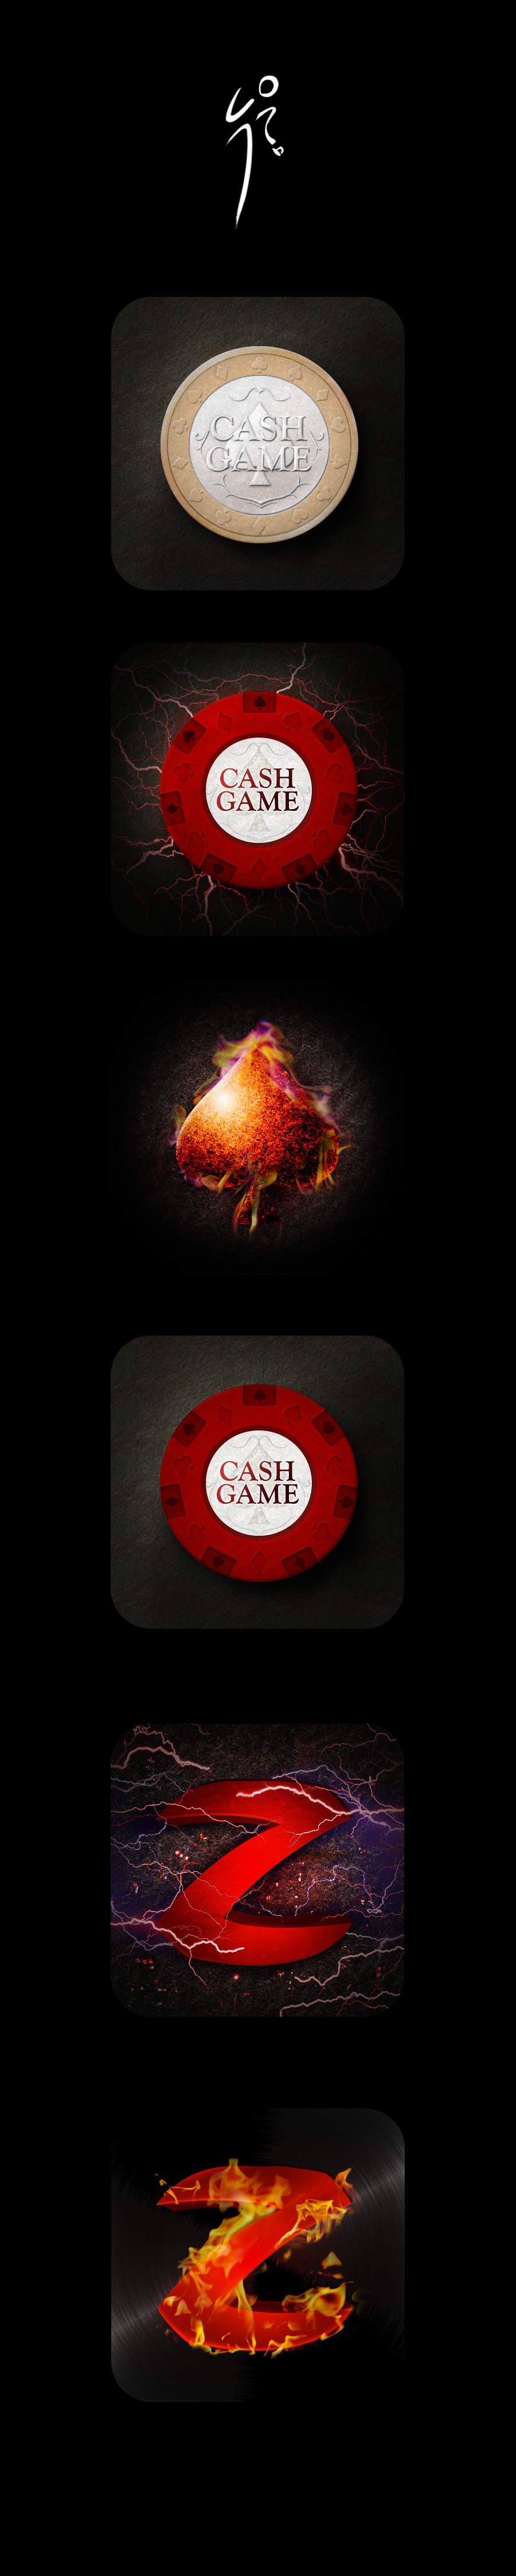 Icon Poker casino illust visual graphic coin spade cash gold silver fire spark